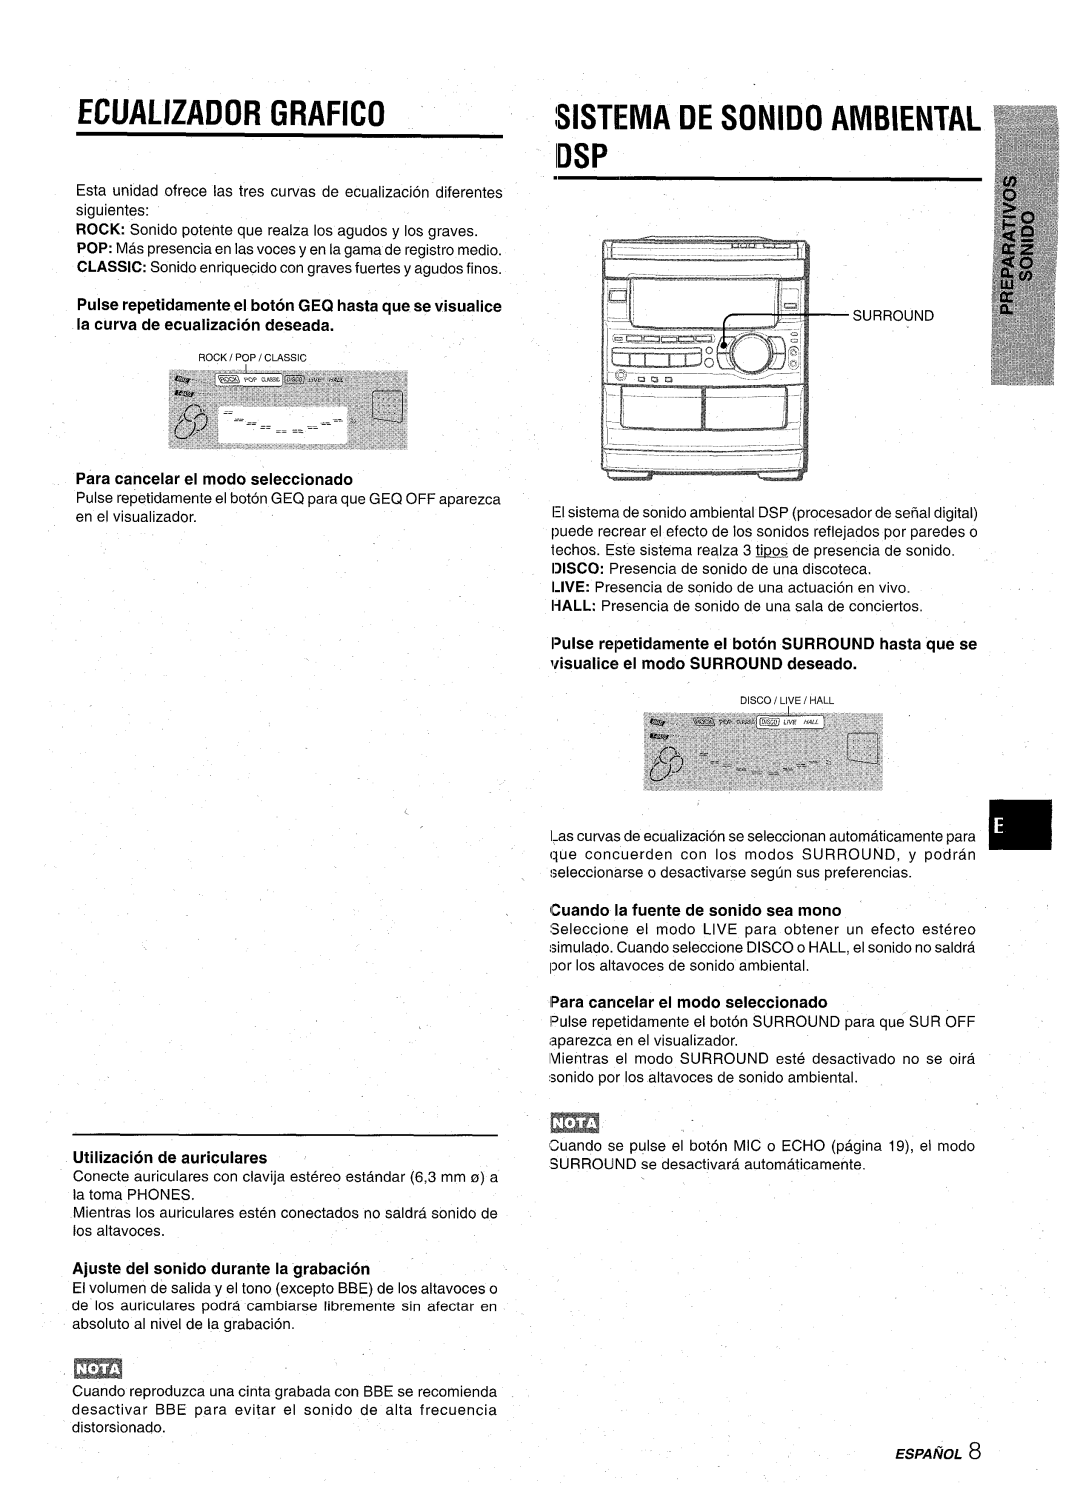 Aiwa CX-NA92 manual Ecualizador Grafico, Sistema De Sonido Ambiental, Para cancelar el modo seleccionado, Idsp, Espanol 